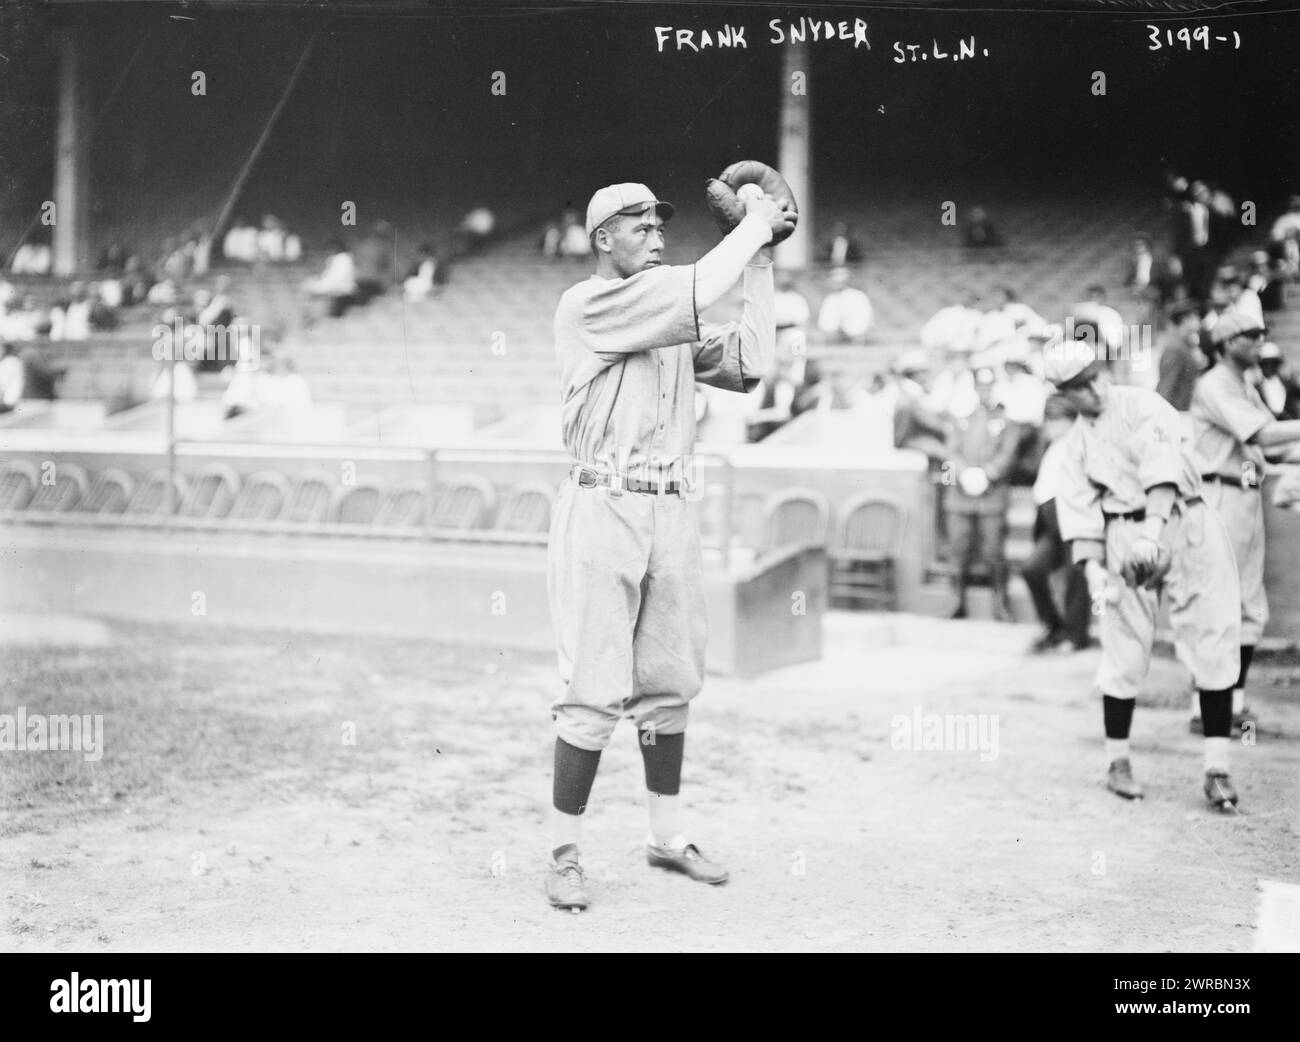 Frank Snyder, St. Louis NL (baseball), 1914, Glass negatives, 1 negative: glass Stock Photo